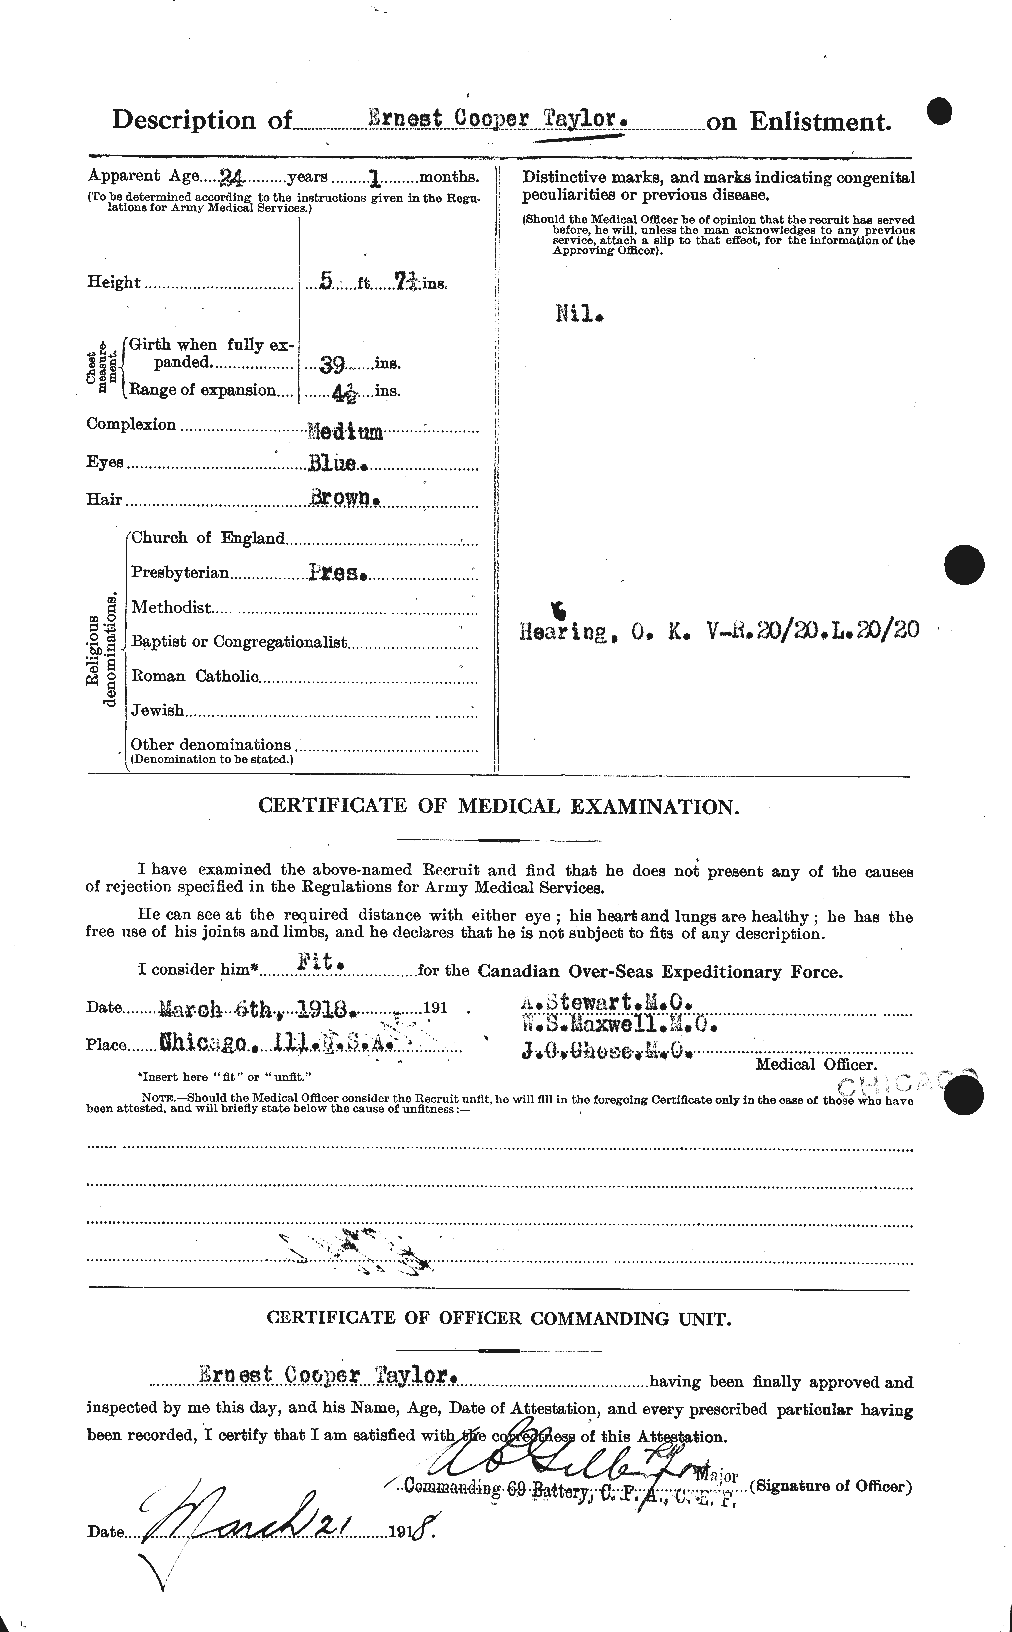 Dossiers du Personnel de la Première Guerre mondiale - CEC 627389b